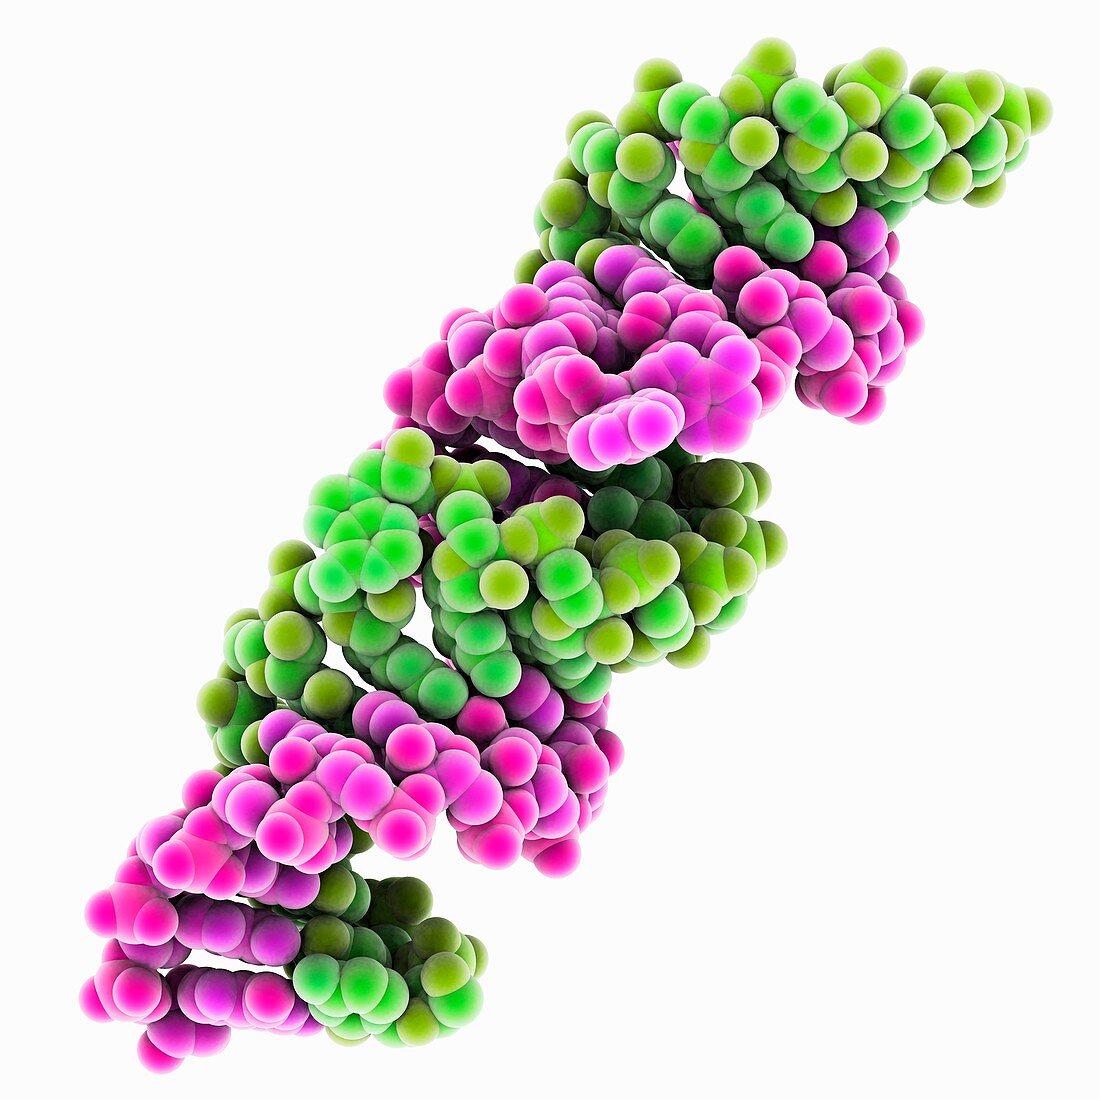 Genomic HIV-RNA duplex